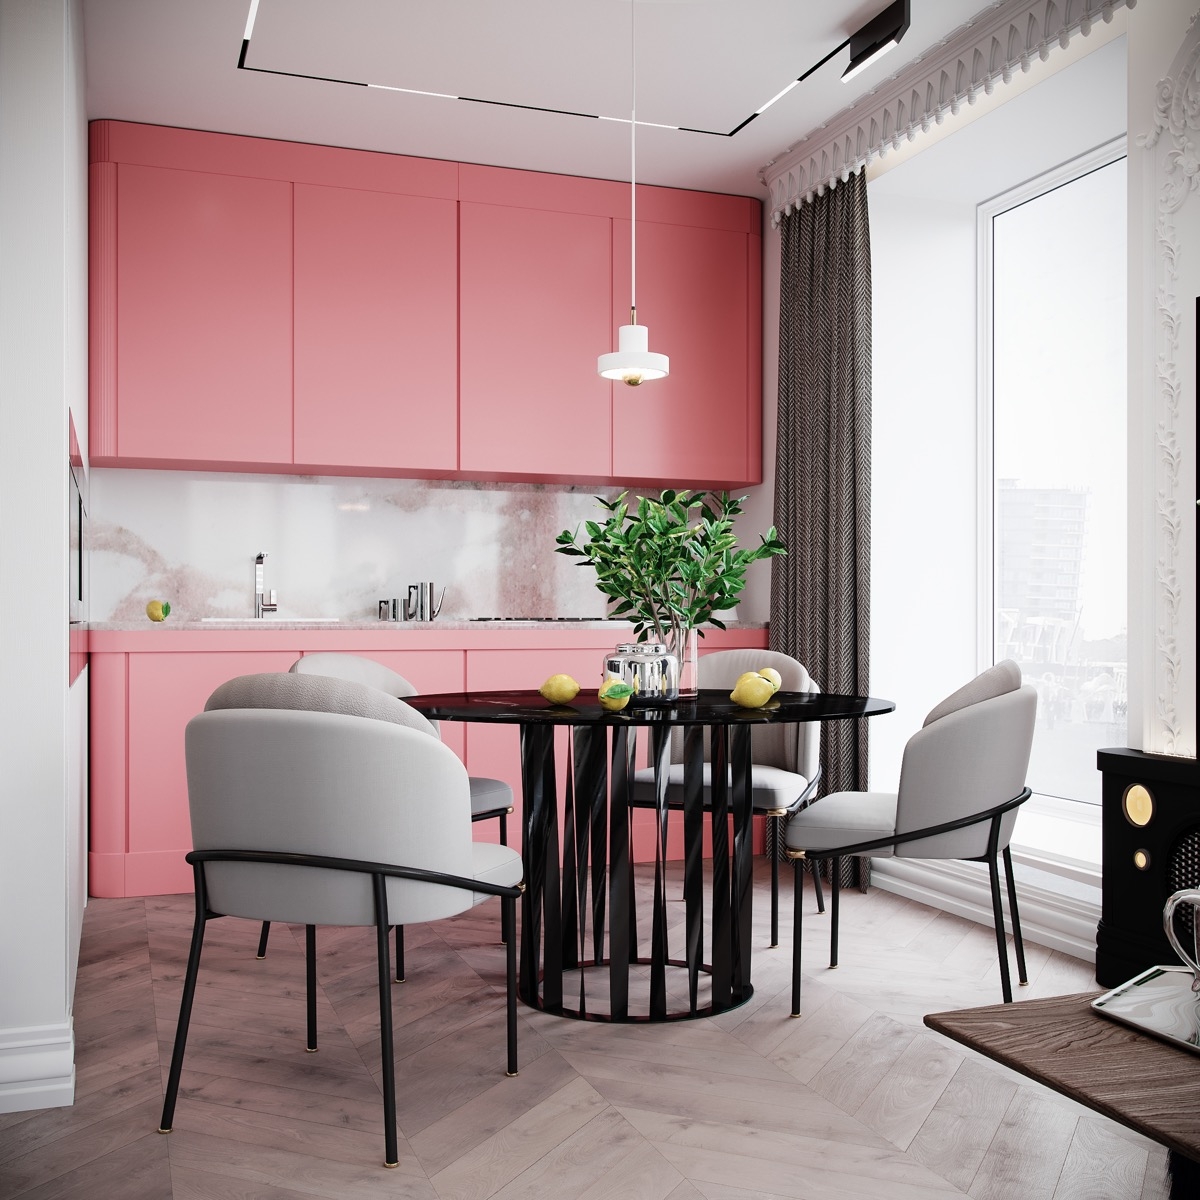 Tủ bếp màu hồng tươi sáng sẽ là điểm nhấn vô cùng đặc biệt, góp phần nên một bức tranh đầy màu sắc trong phòng bếp